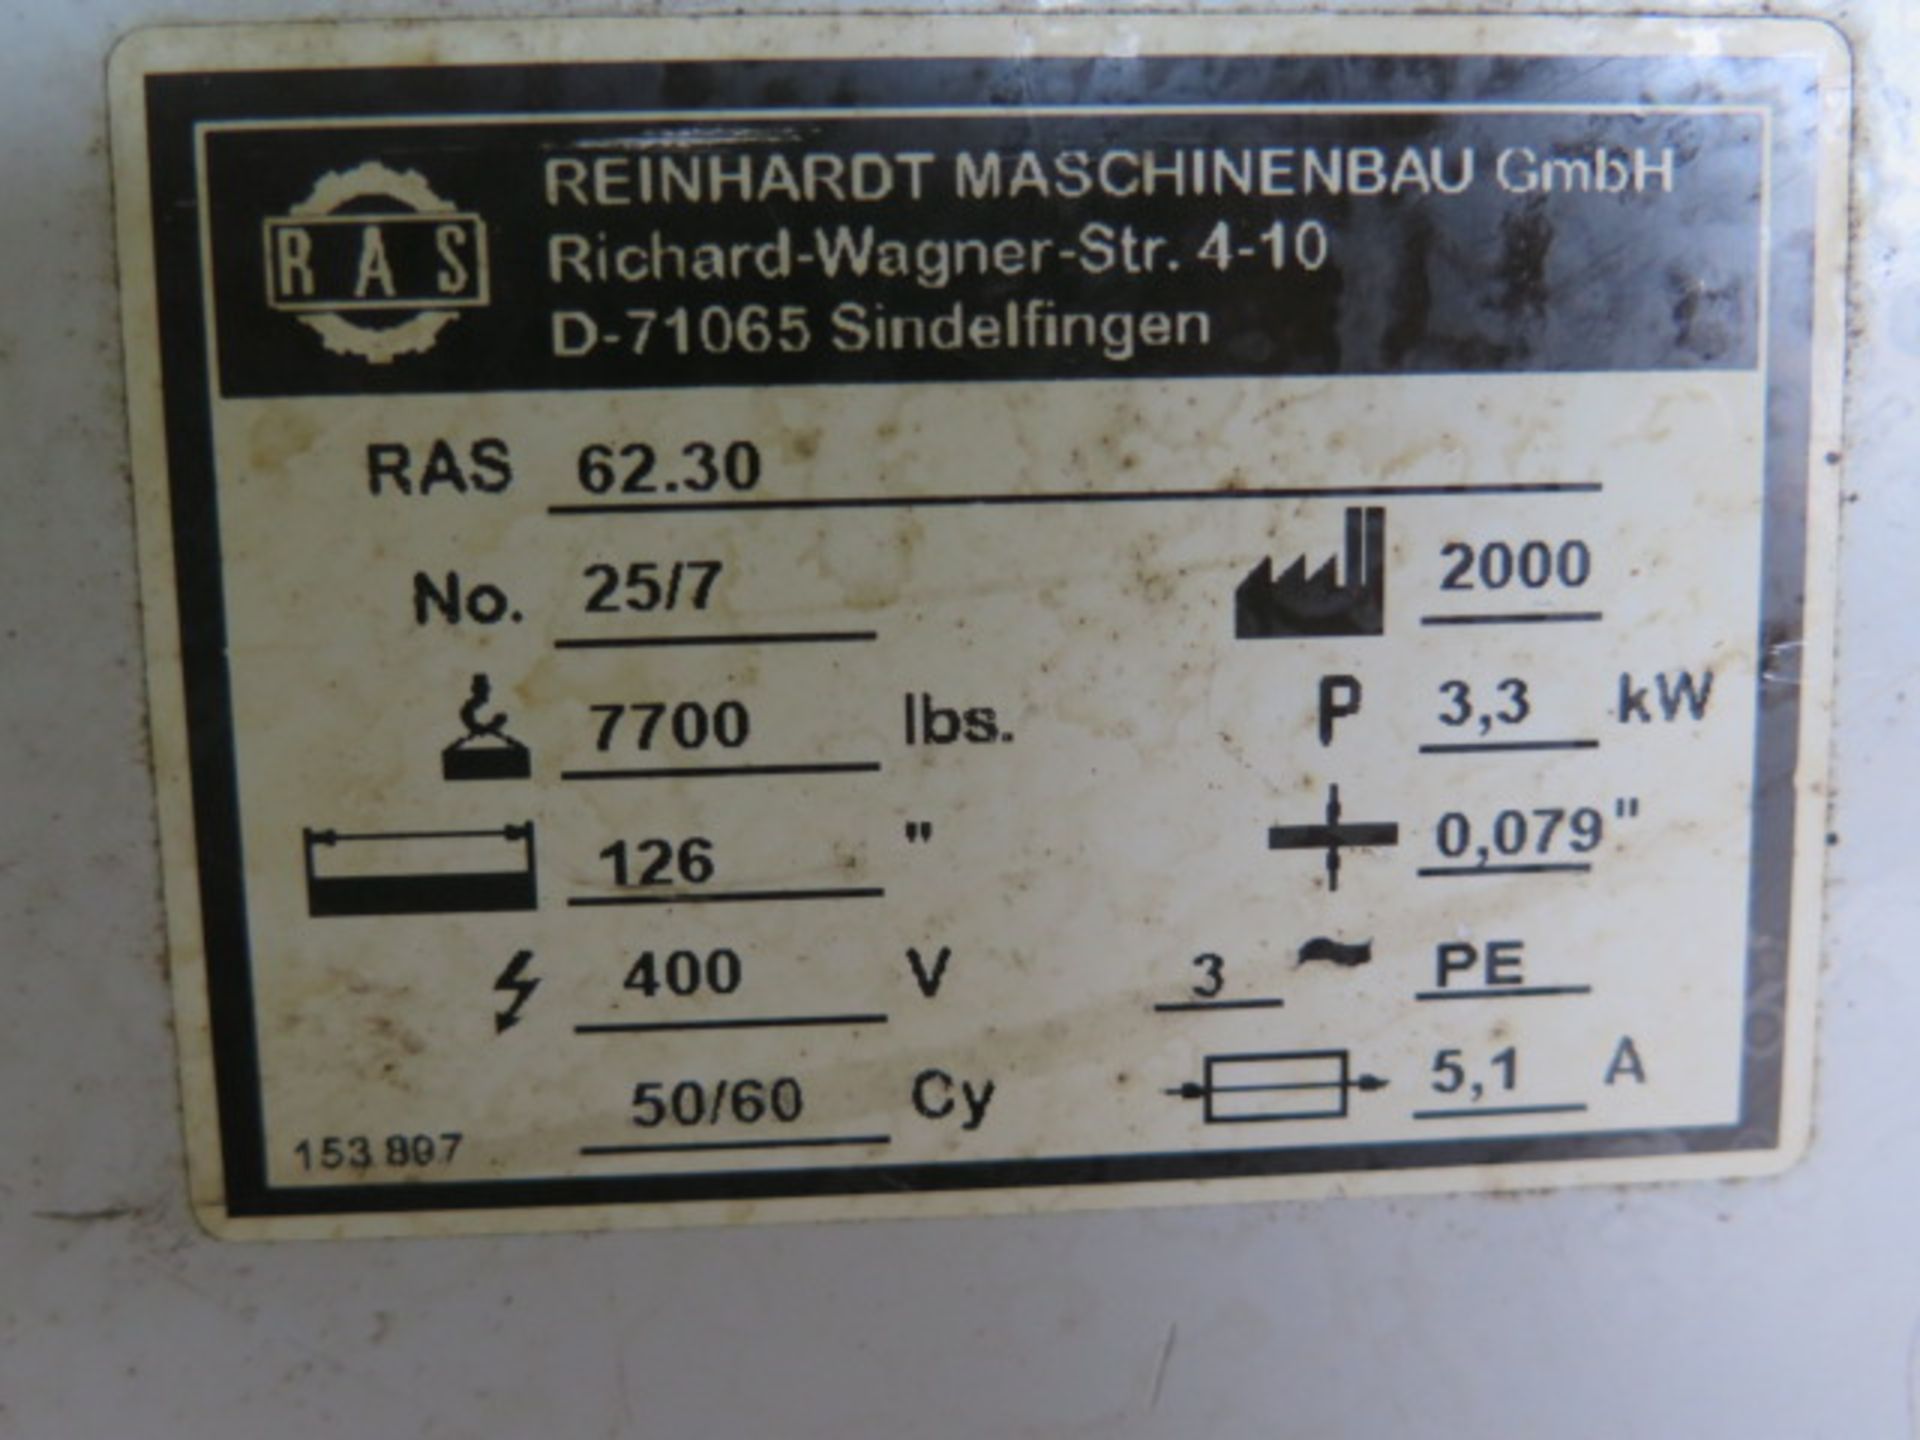 RAS Reinhardt mdl. RAS 62.30 TURBObend PLUS CNC Electric Swivel Folding Machine s/n 25/7 w/ RAS - Image 8 of 14